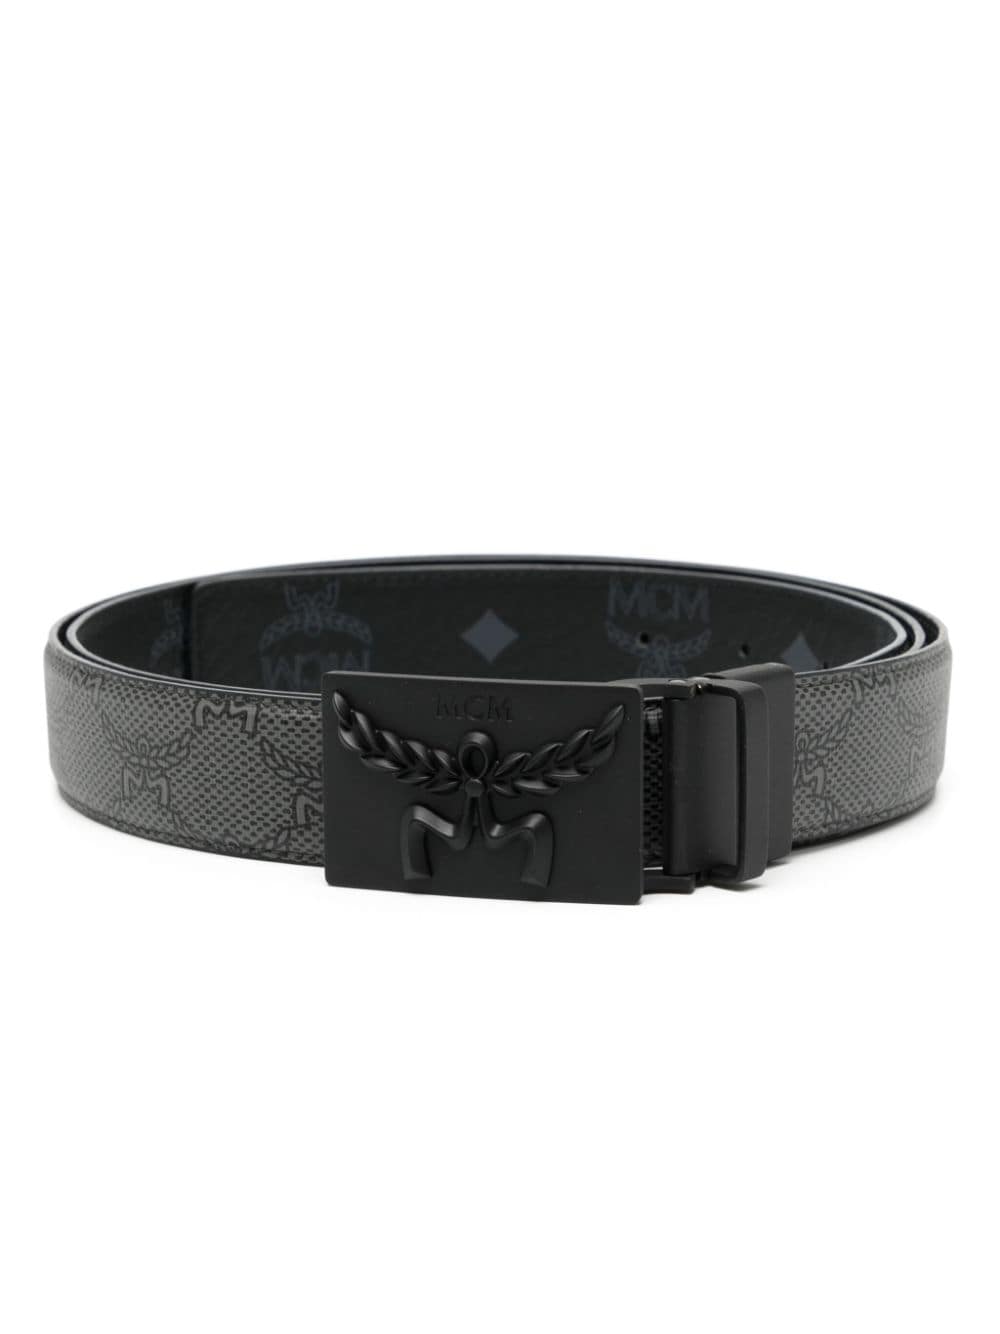 Mcm Himmel Reversible Leather Belt In Black